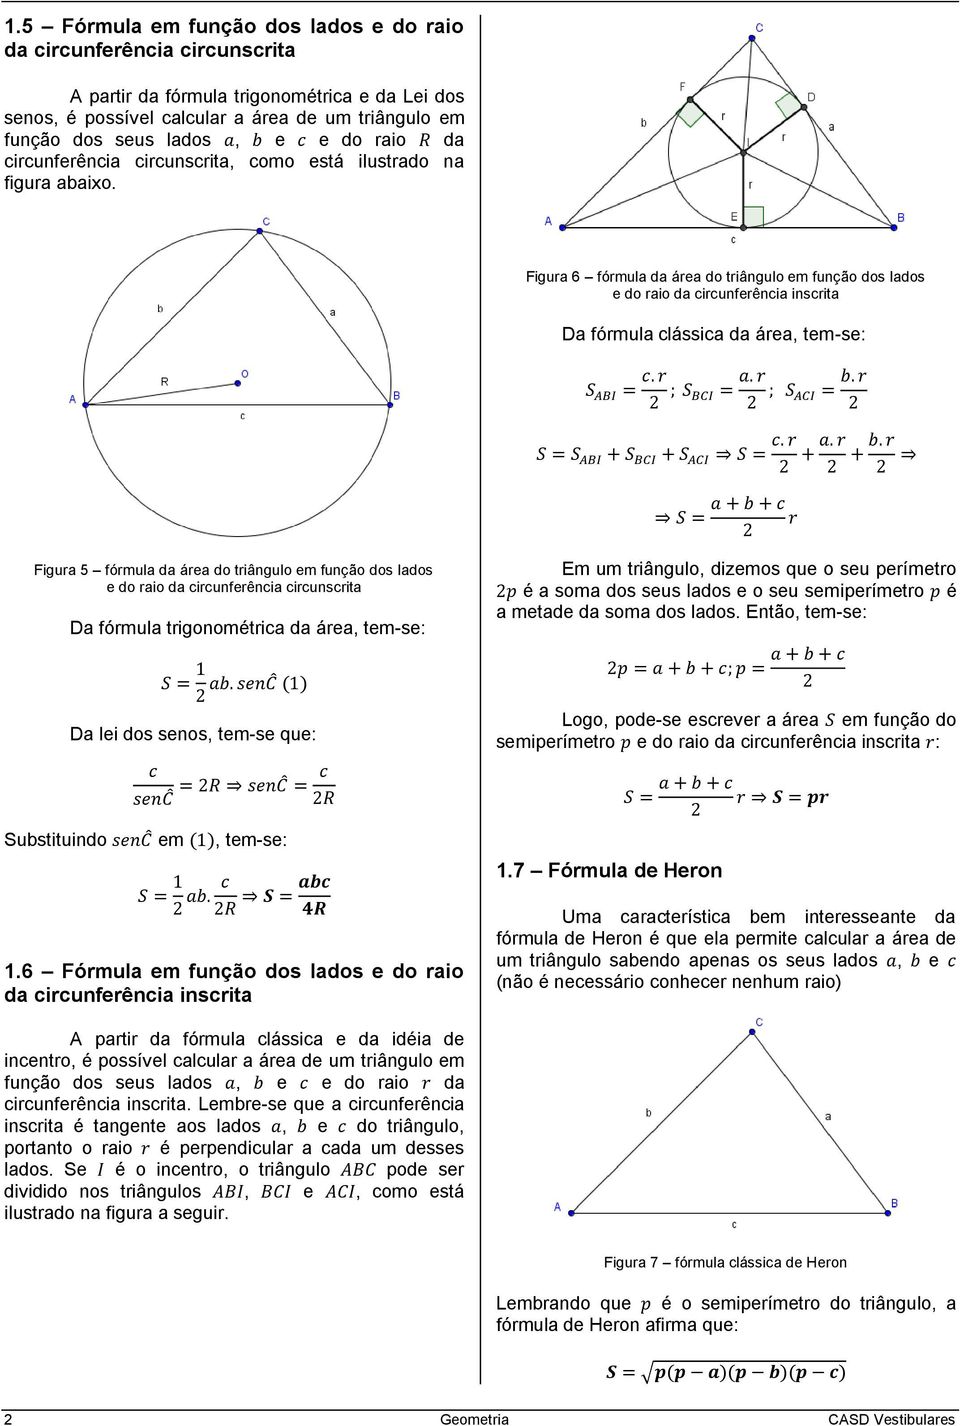 Figura 6 fórmula da área do triângulo em função dos lados e do raio da circunferência inscrita Da fórmula clássica da área, tem-se: Figura 5 fórmula da área do triângulo em função dos lados e do raio